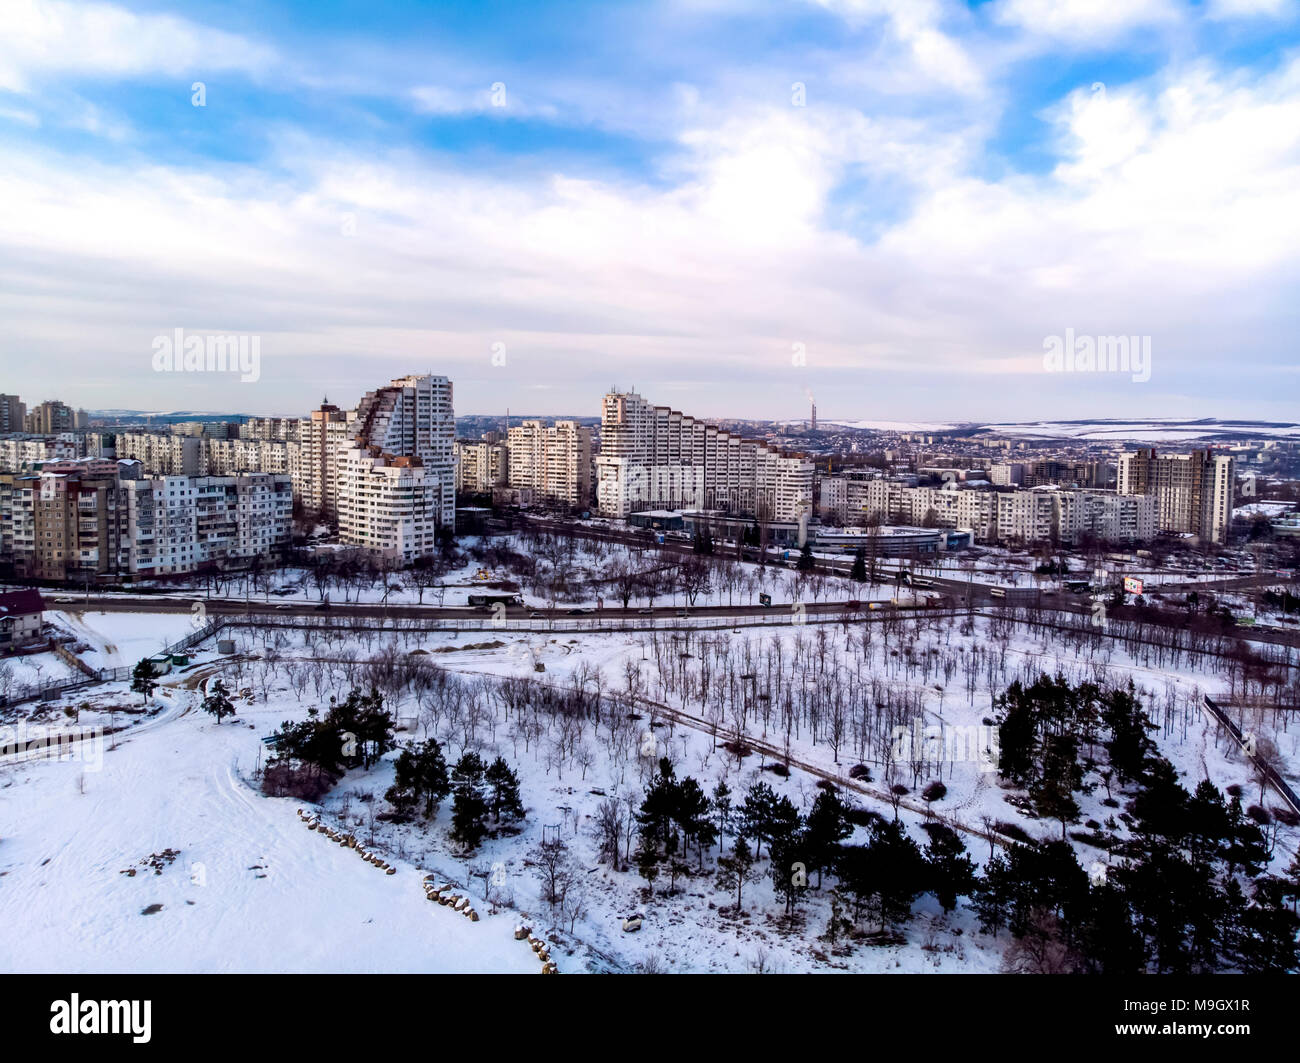 gates of Chisinau city, aerial photography, beautiful landscape, background image Stock Photo